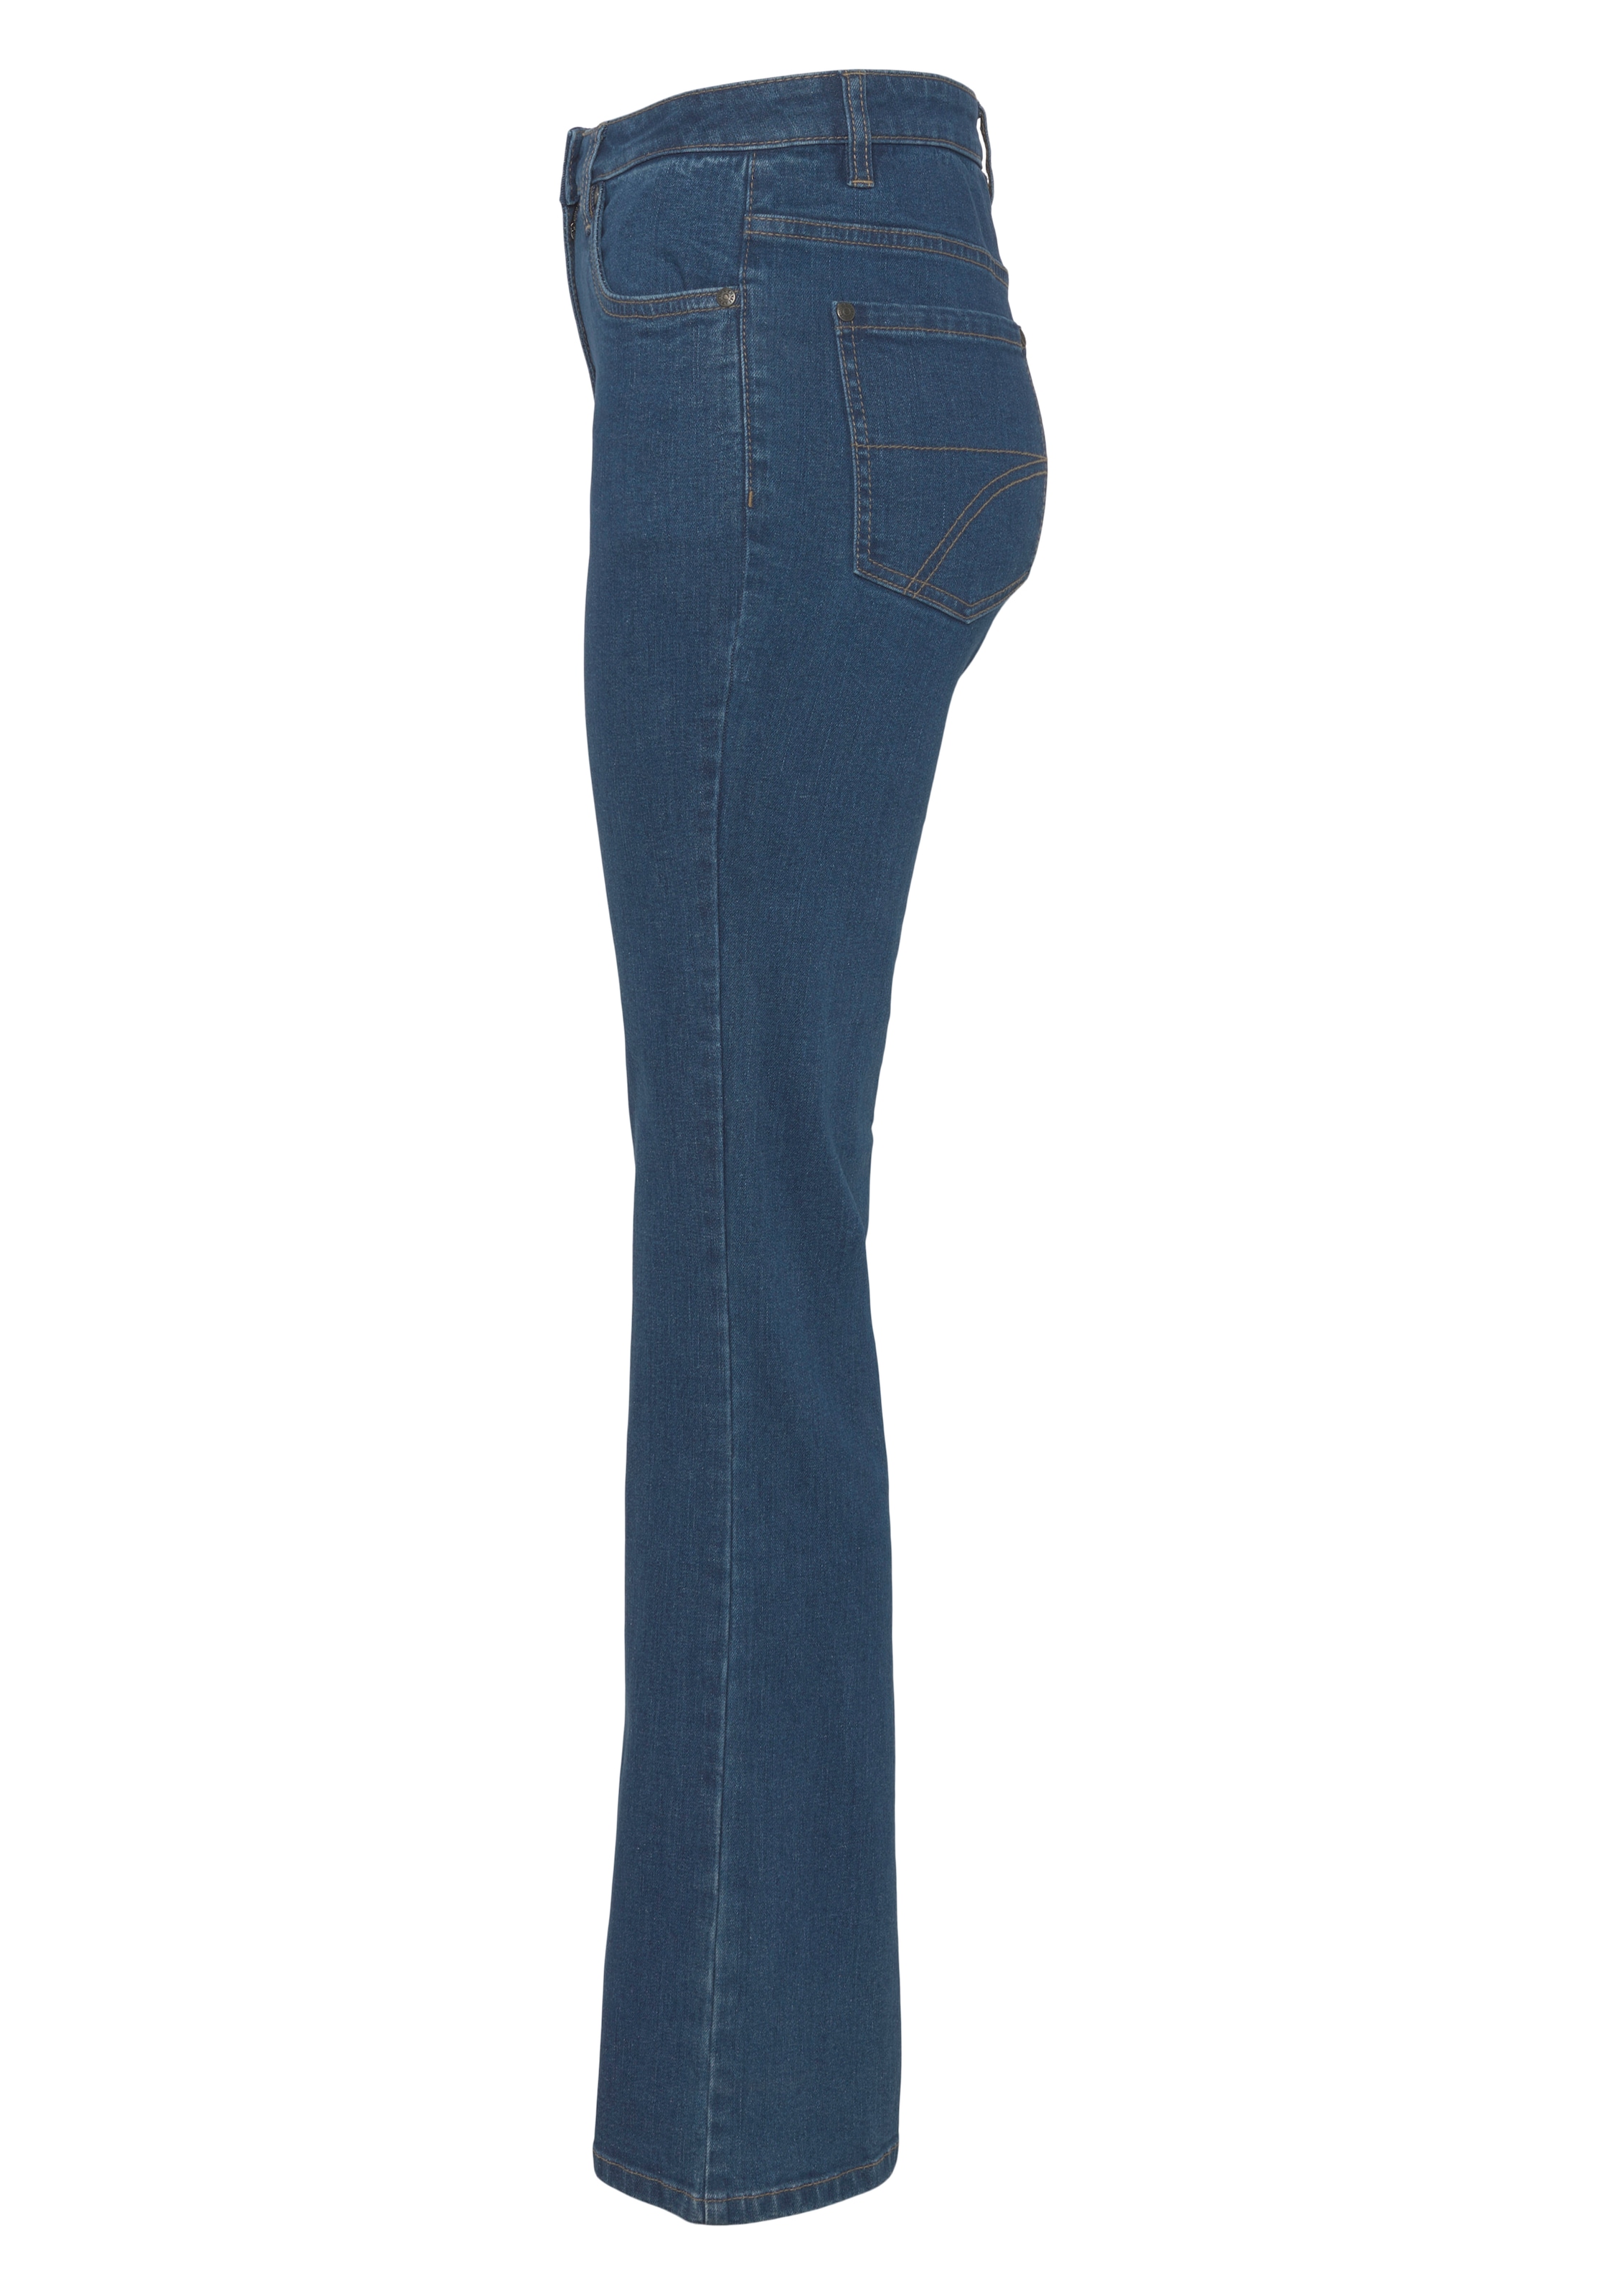 Arizona online Bootcut-Jeans, Waist High